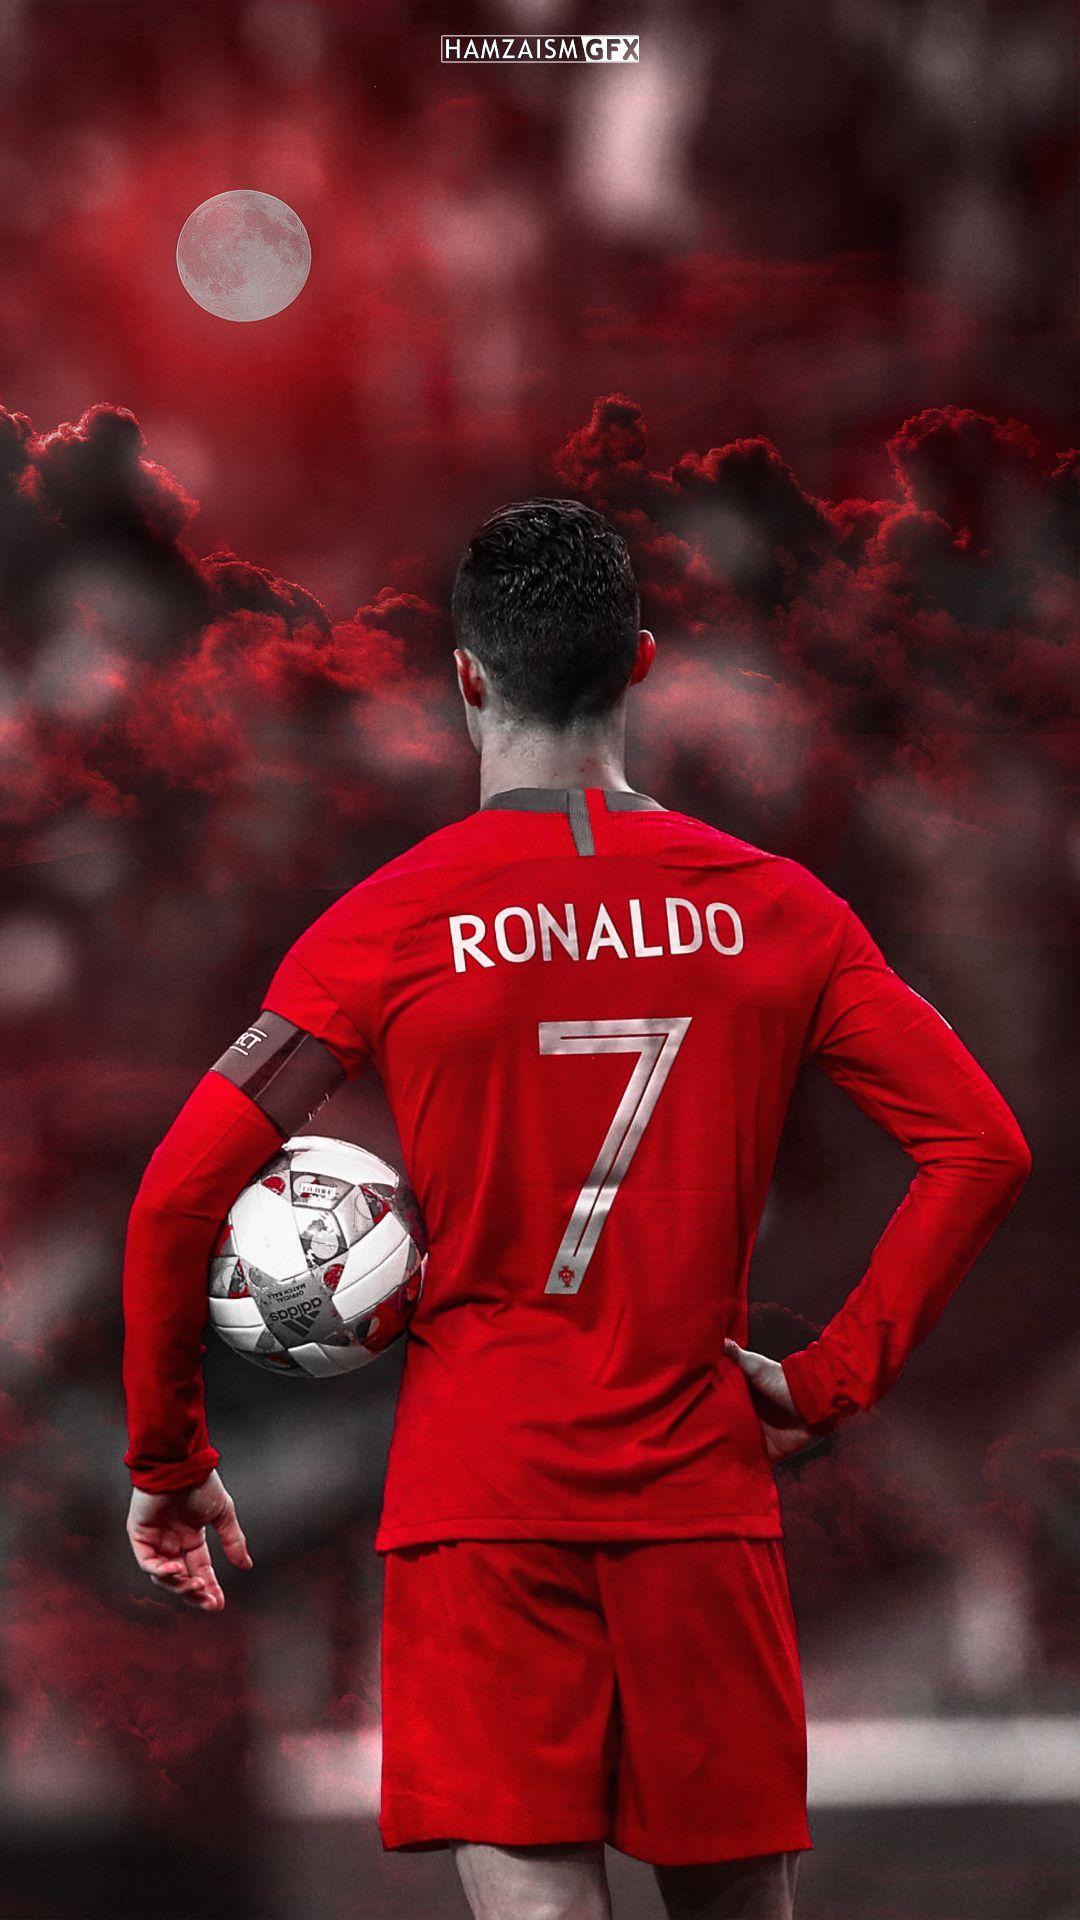 CR7 Ronaldo Portugal wallpaper by Tabishcr  Download on ZEDGE  e839